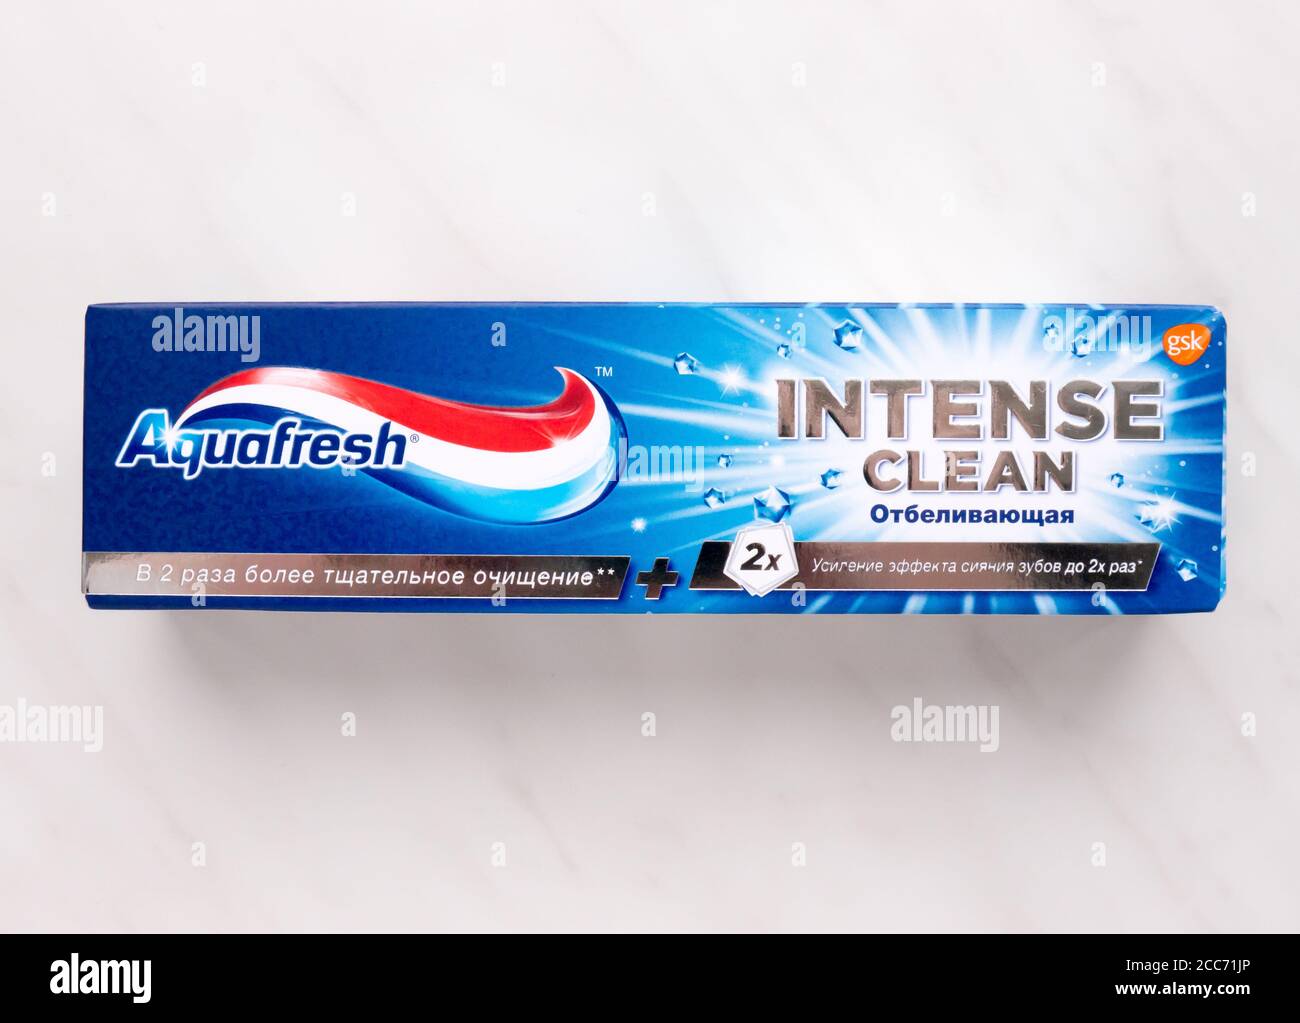 aquafresh toothpaste ad